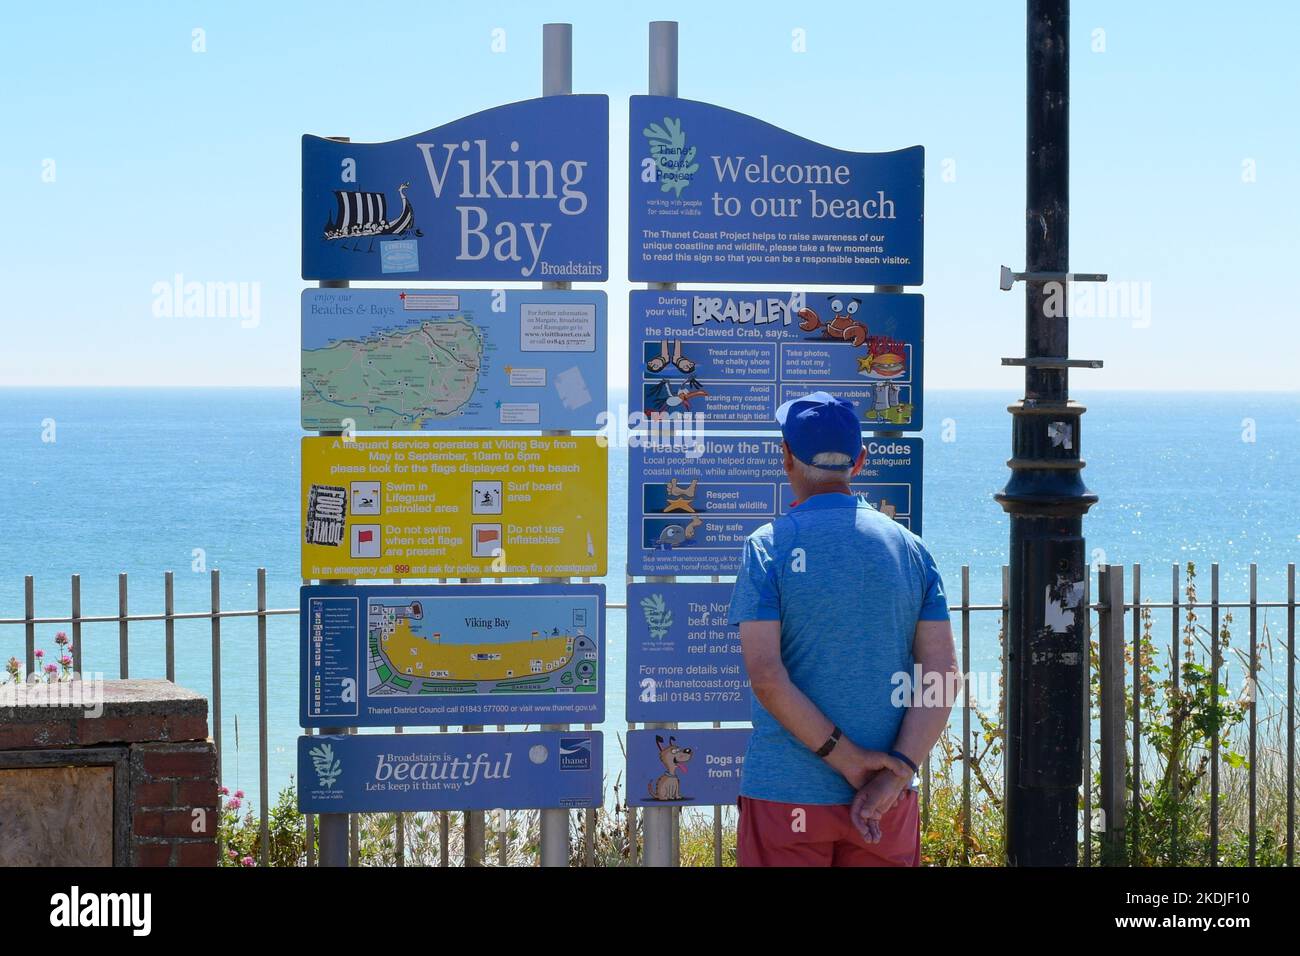 Homme lisant le tableau d'information à la plage de Viking Bay, Broadescaliers, Kent, Angleterre, Royaume-Uni Banque D'Images